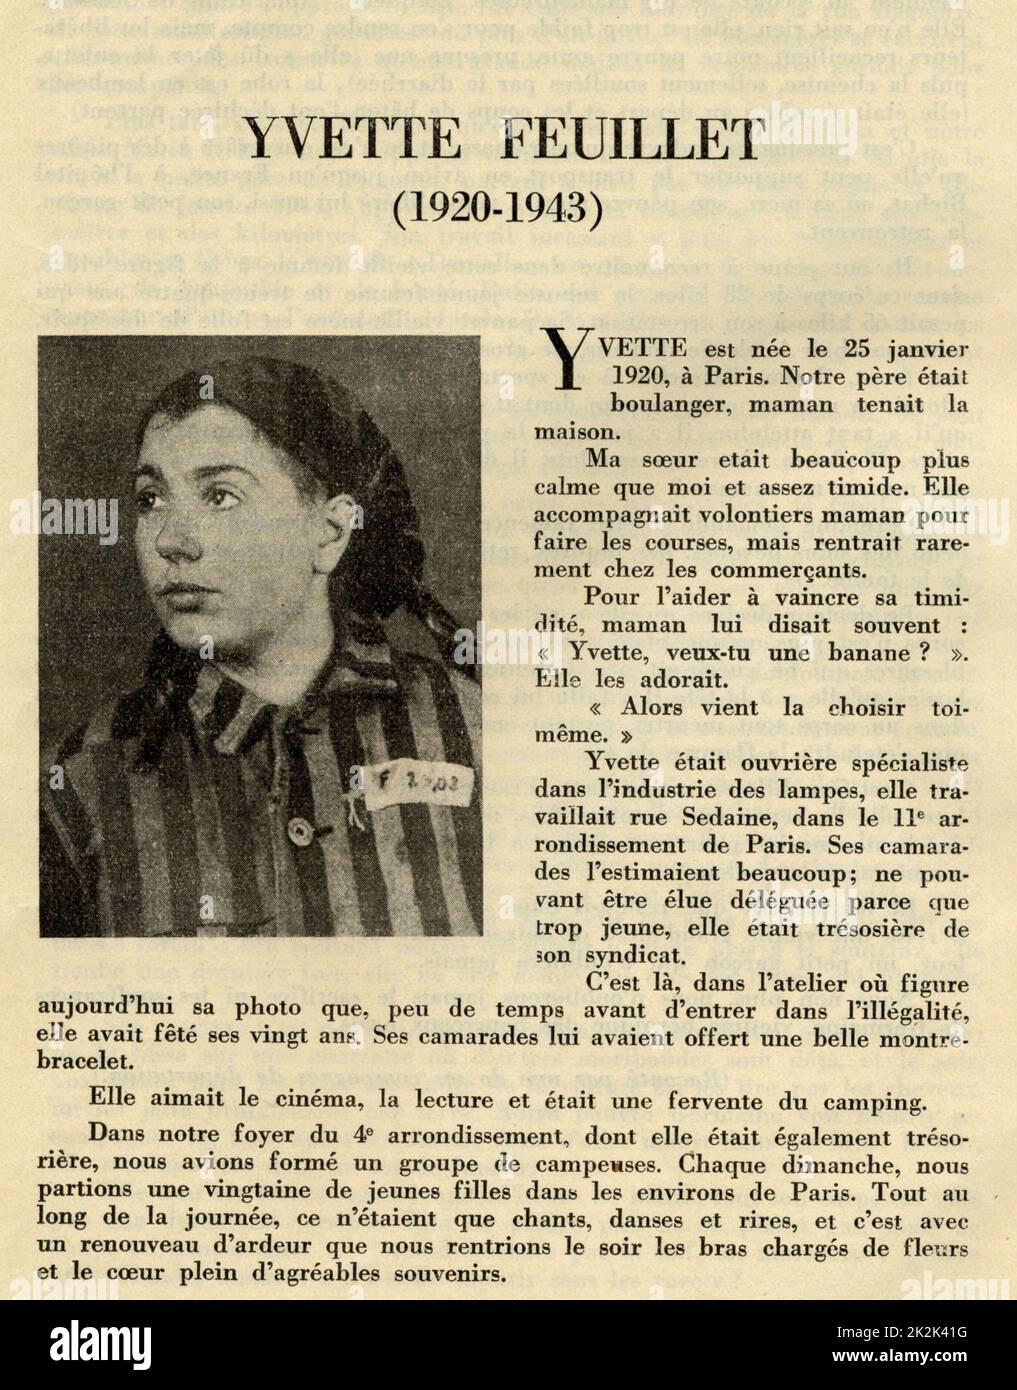 Registre de l'Union des femmes françaises dédiée aux femmes héroïques qui sont mortes pour la France: Portrait d'Yvette Feuillet (1920-1943), qui est décédée au camp de concentration d'Auschwitz. 1950 France Collection Charles Grodzenski Banque D'Images